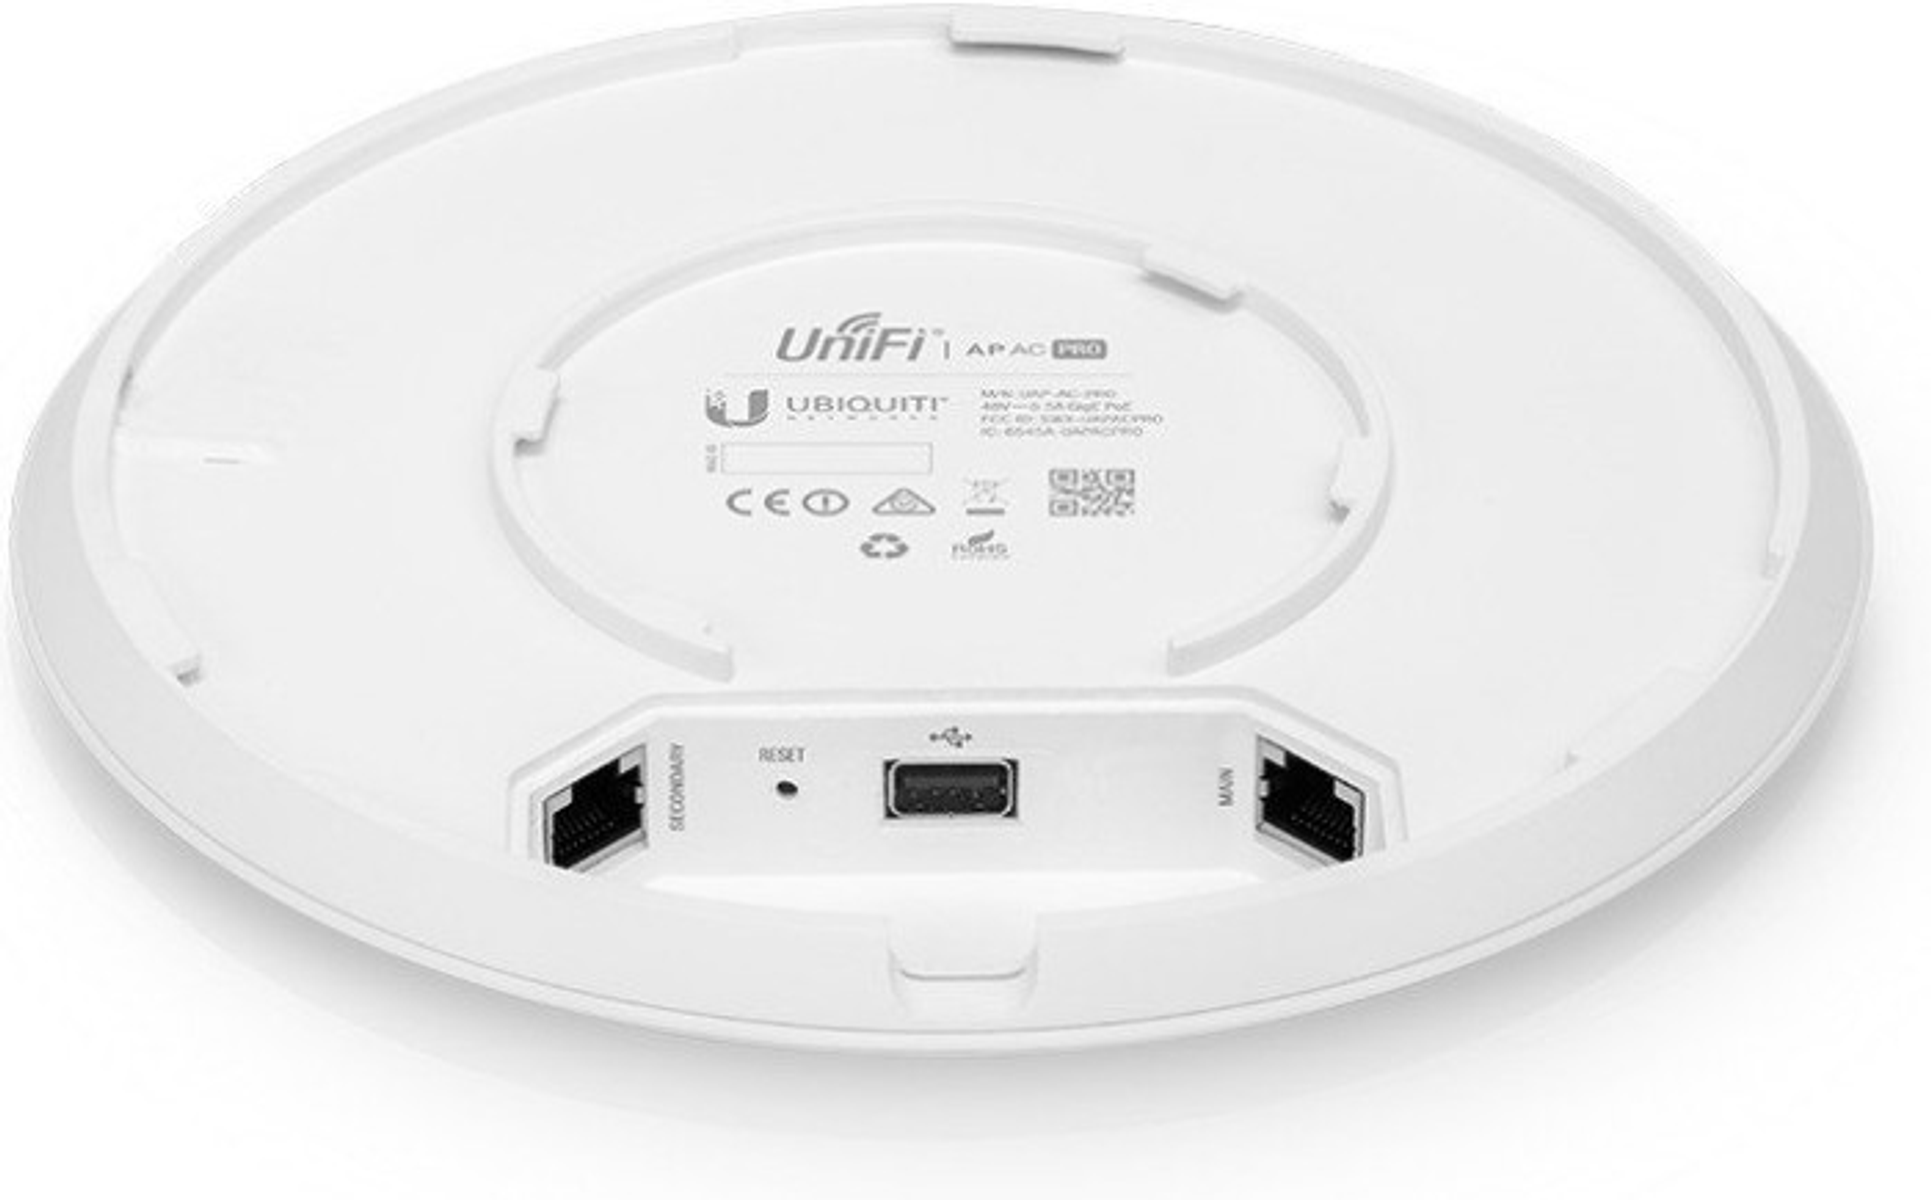 UBIQUITI Ubiquiti UniFi AP 1300 - AC Router 5GHZ/1300MBPS 2,4GHZ/450MBPS PRO 5er-Pack Mbit/s 